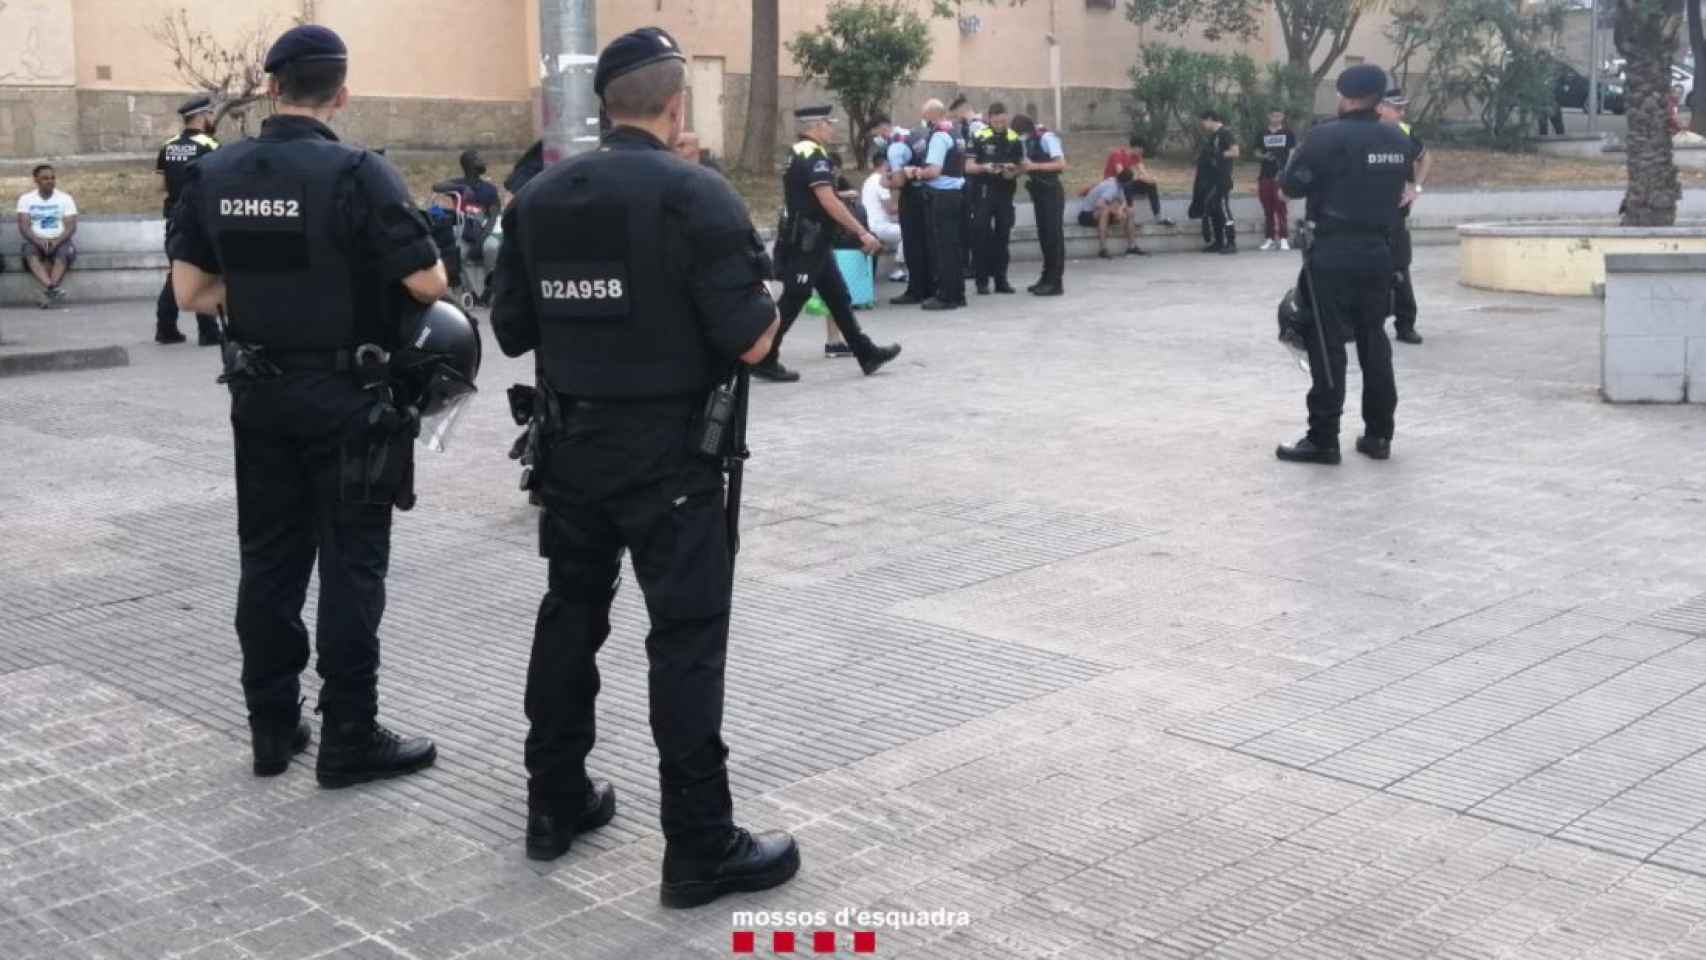 Operativo policial en L'Hospitalet de Llobregat / MOSSOS D'ESQUADRA